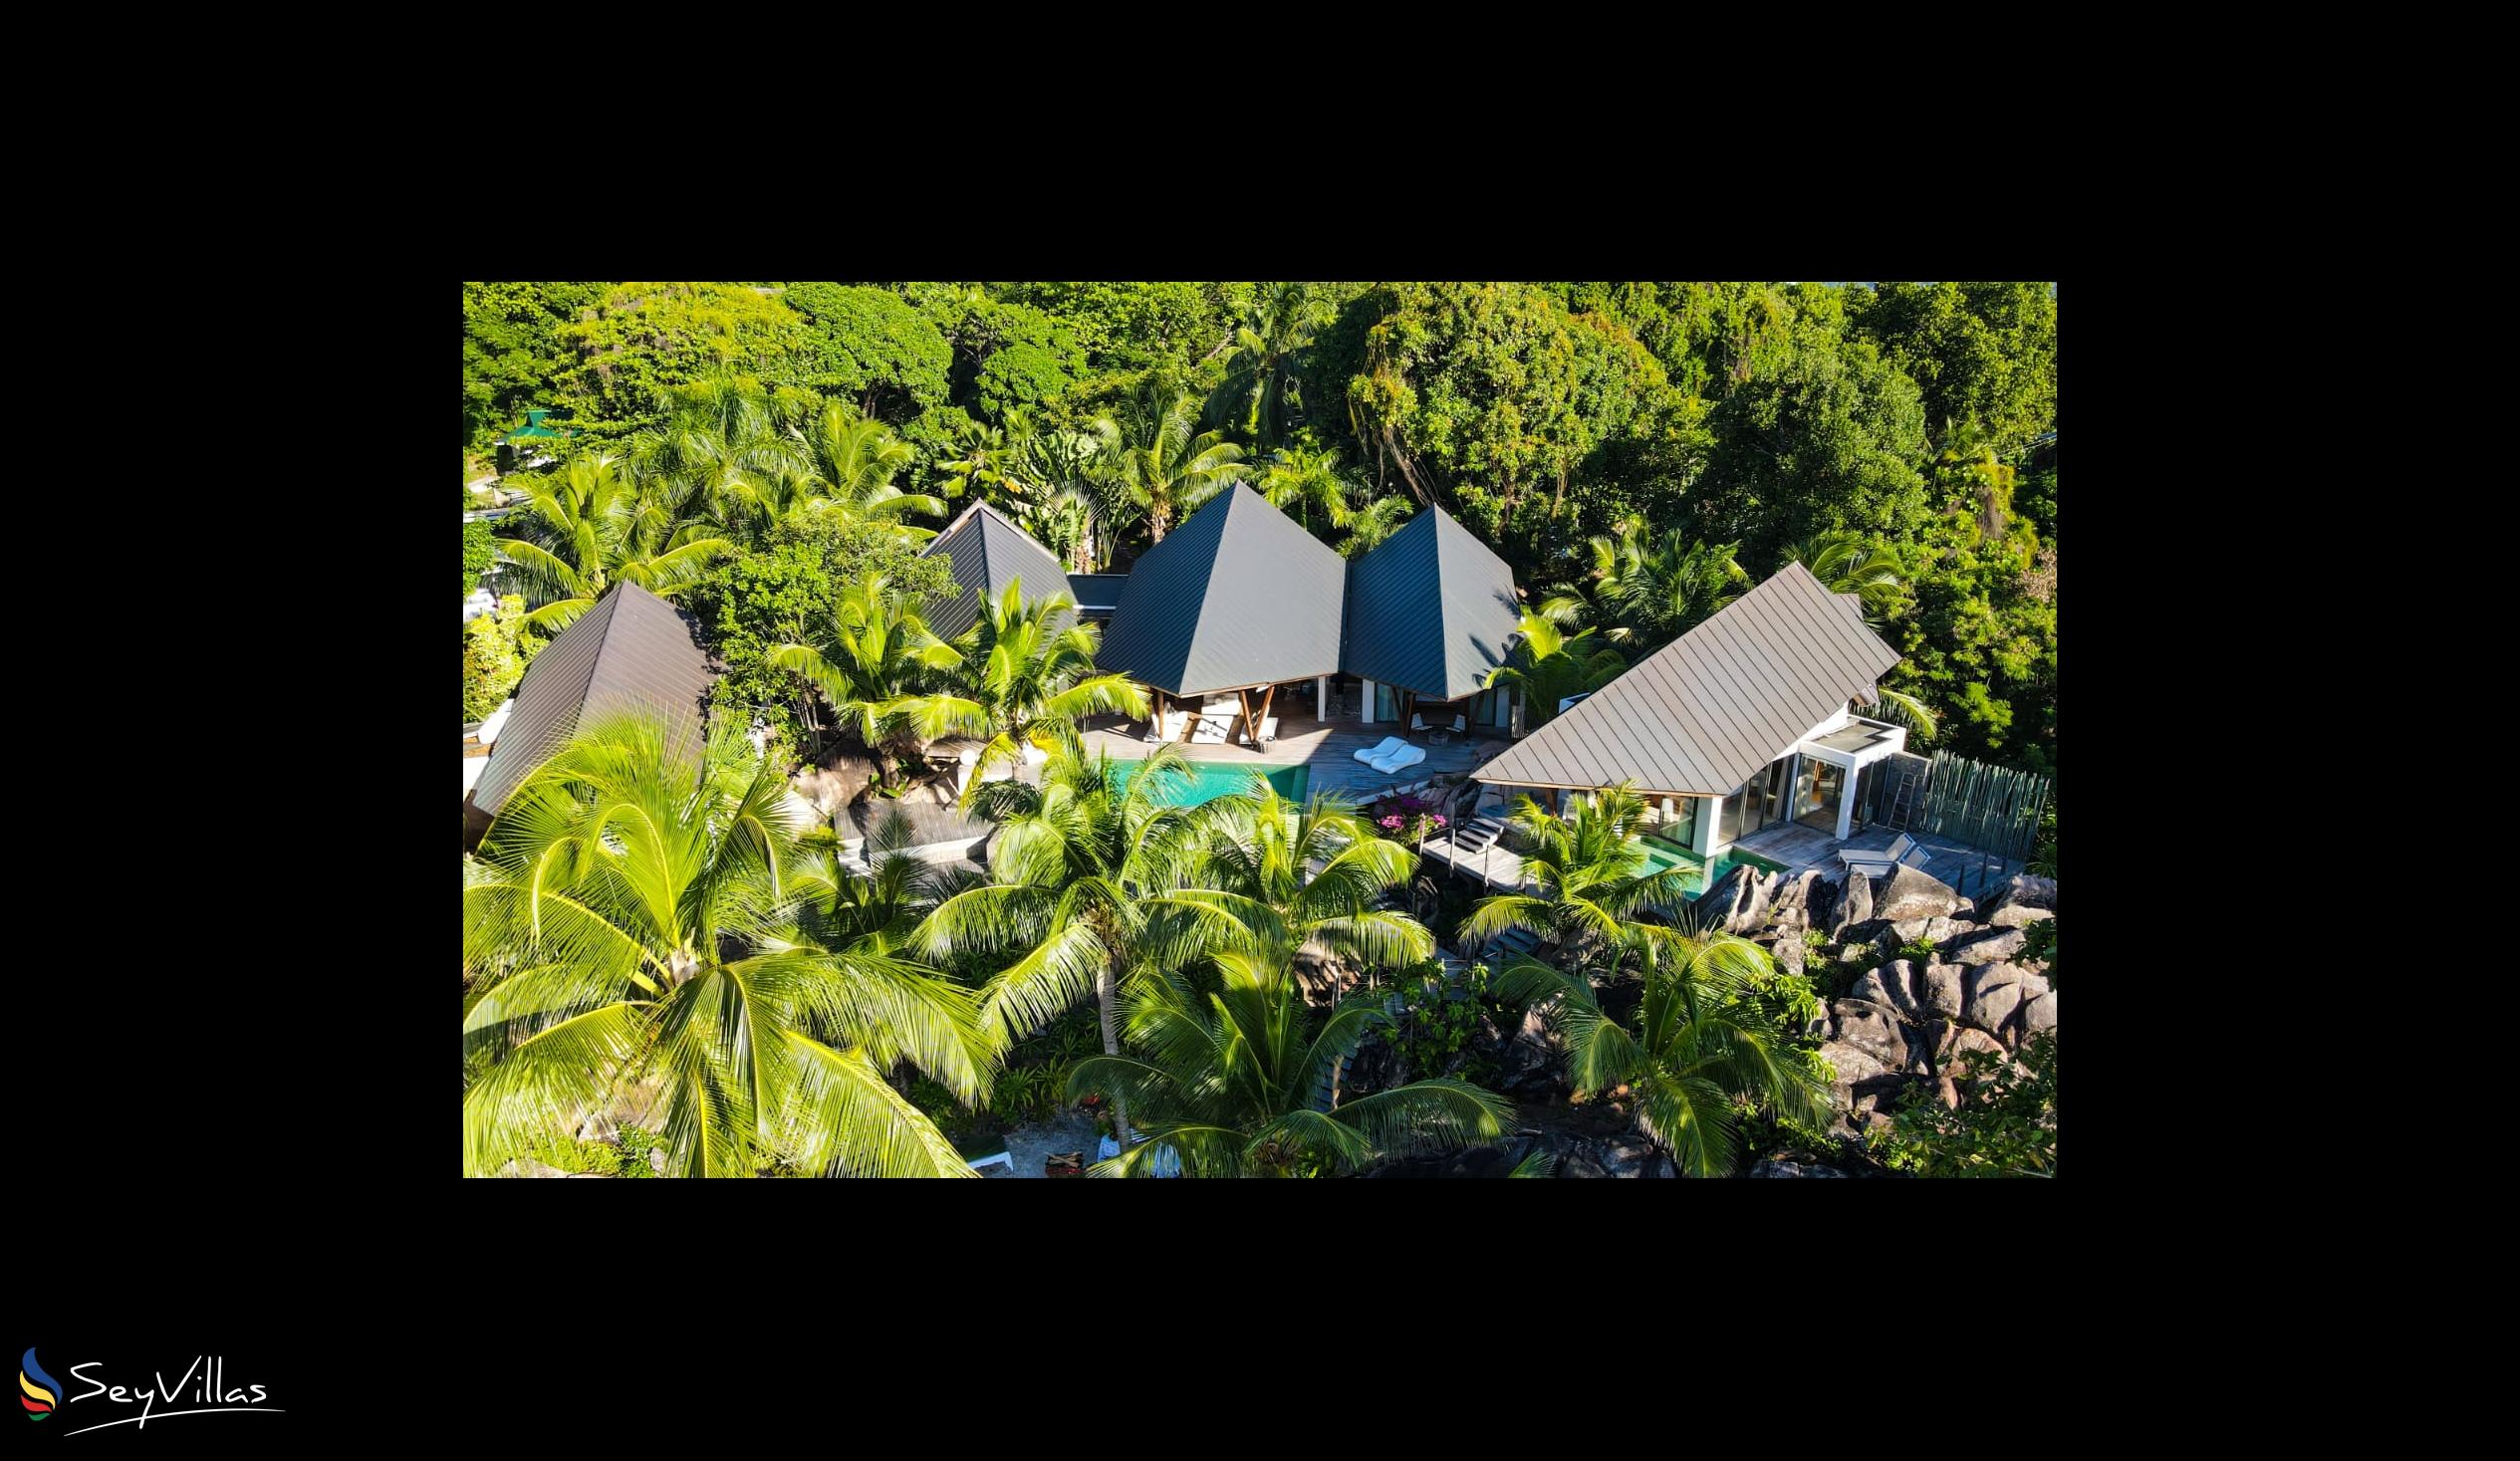 Foto 2: Villa Deckenia - Aussenbereich - Praslin (Seychellen)